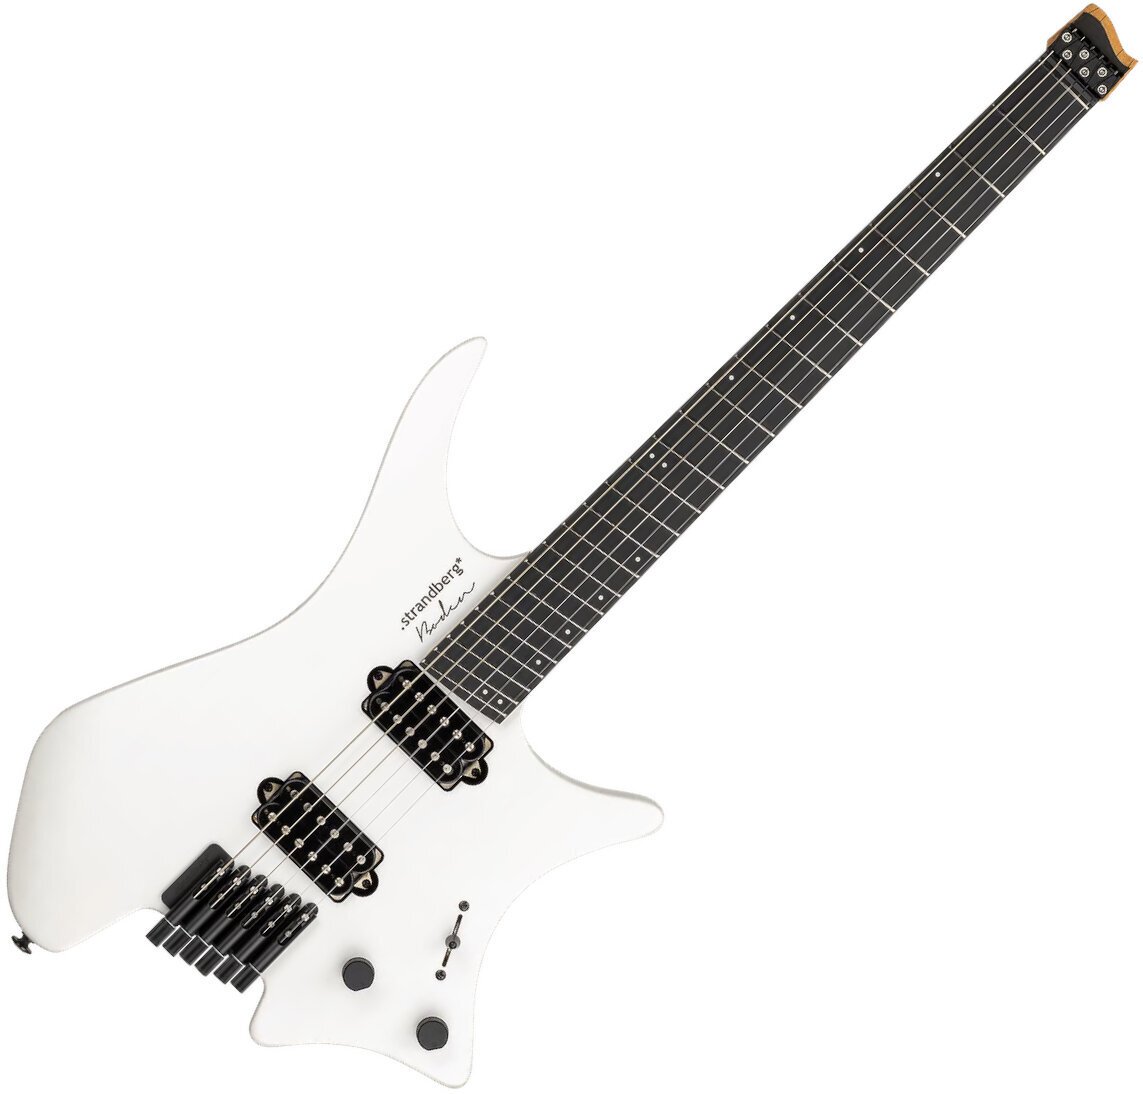 Headless gitara Strandberg Boden Metal NX 6 White Granite